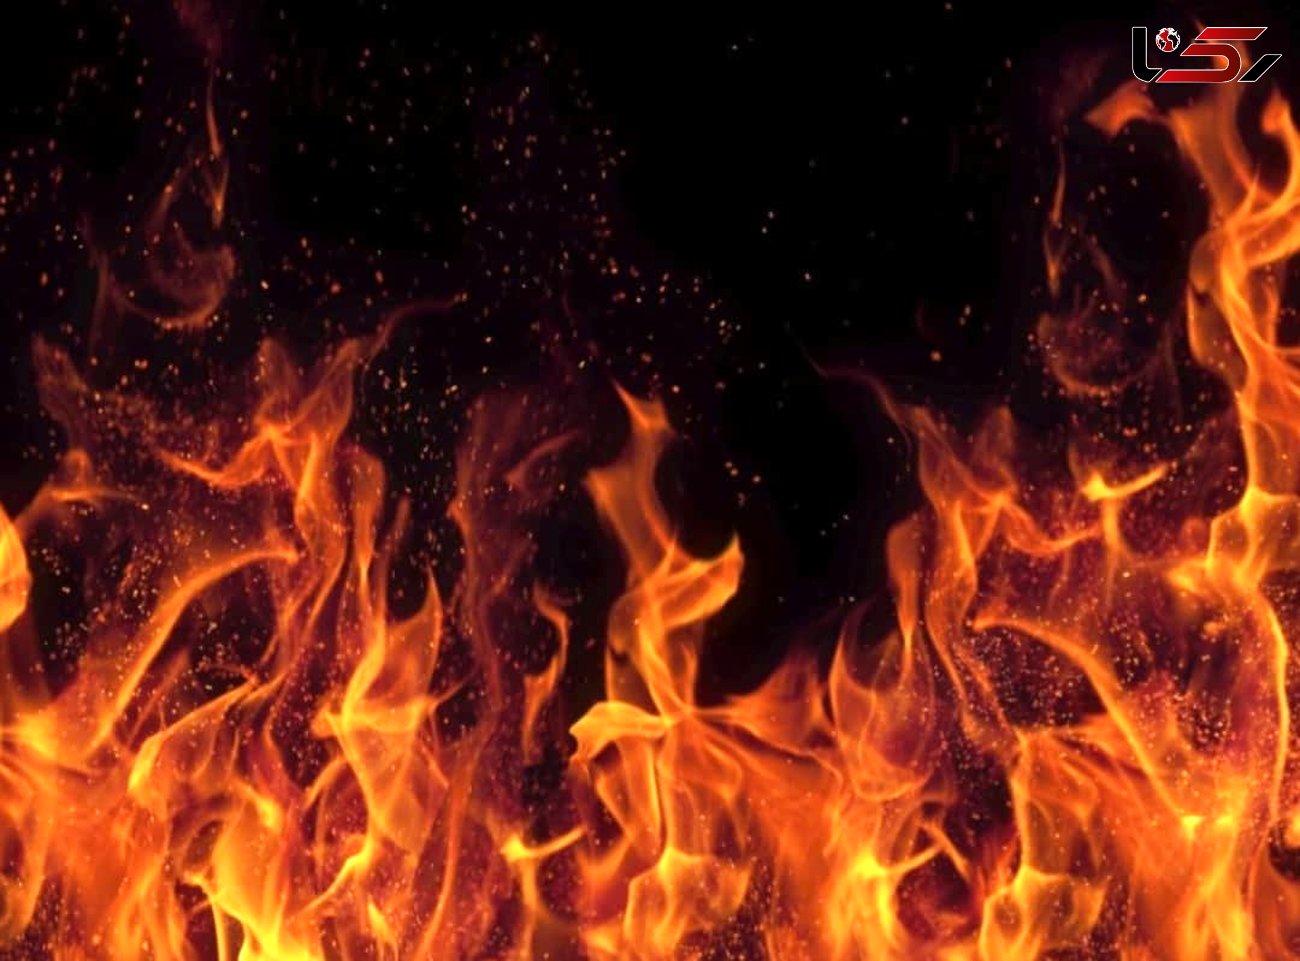 آتش سوزی مرگبار در شهر صنعتی البرز / 4 کارگر زنده زنده سوختند + فیلم